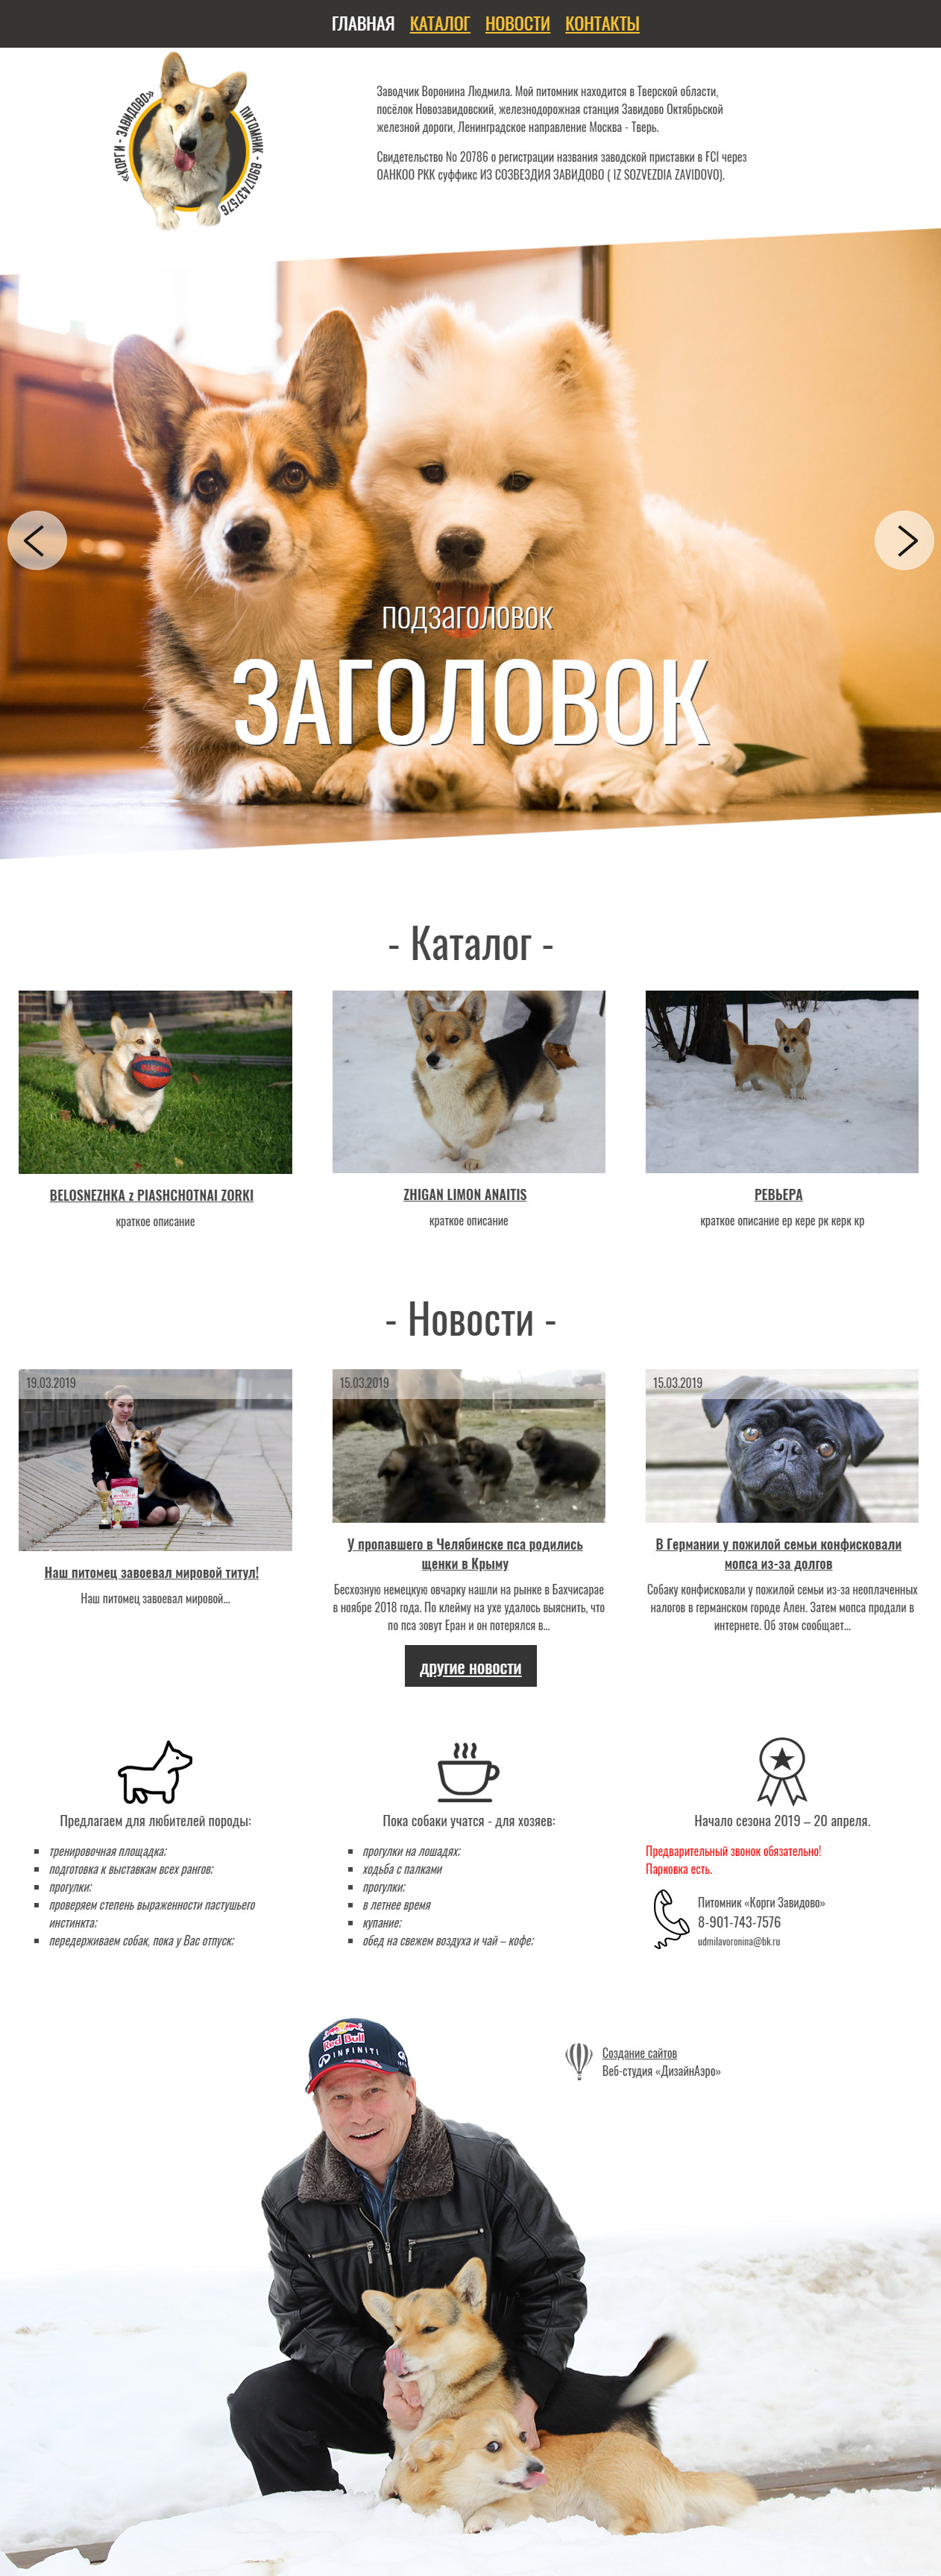 Сайт питомника собак породы Вельш-корги в г. Завидово